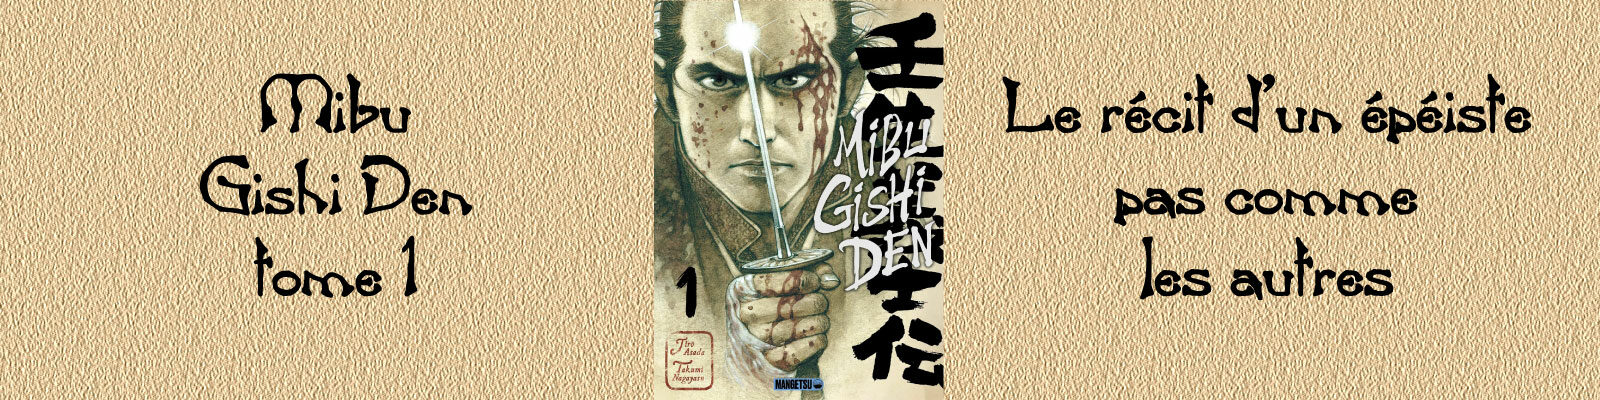 Mibu Gishi Den-Vol.1-2